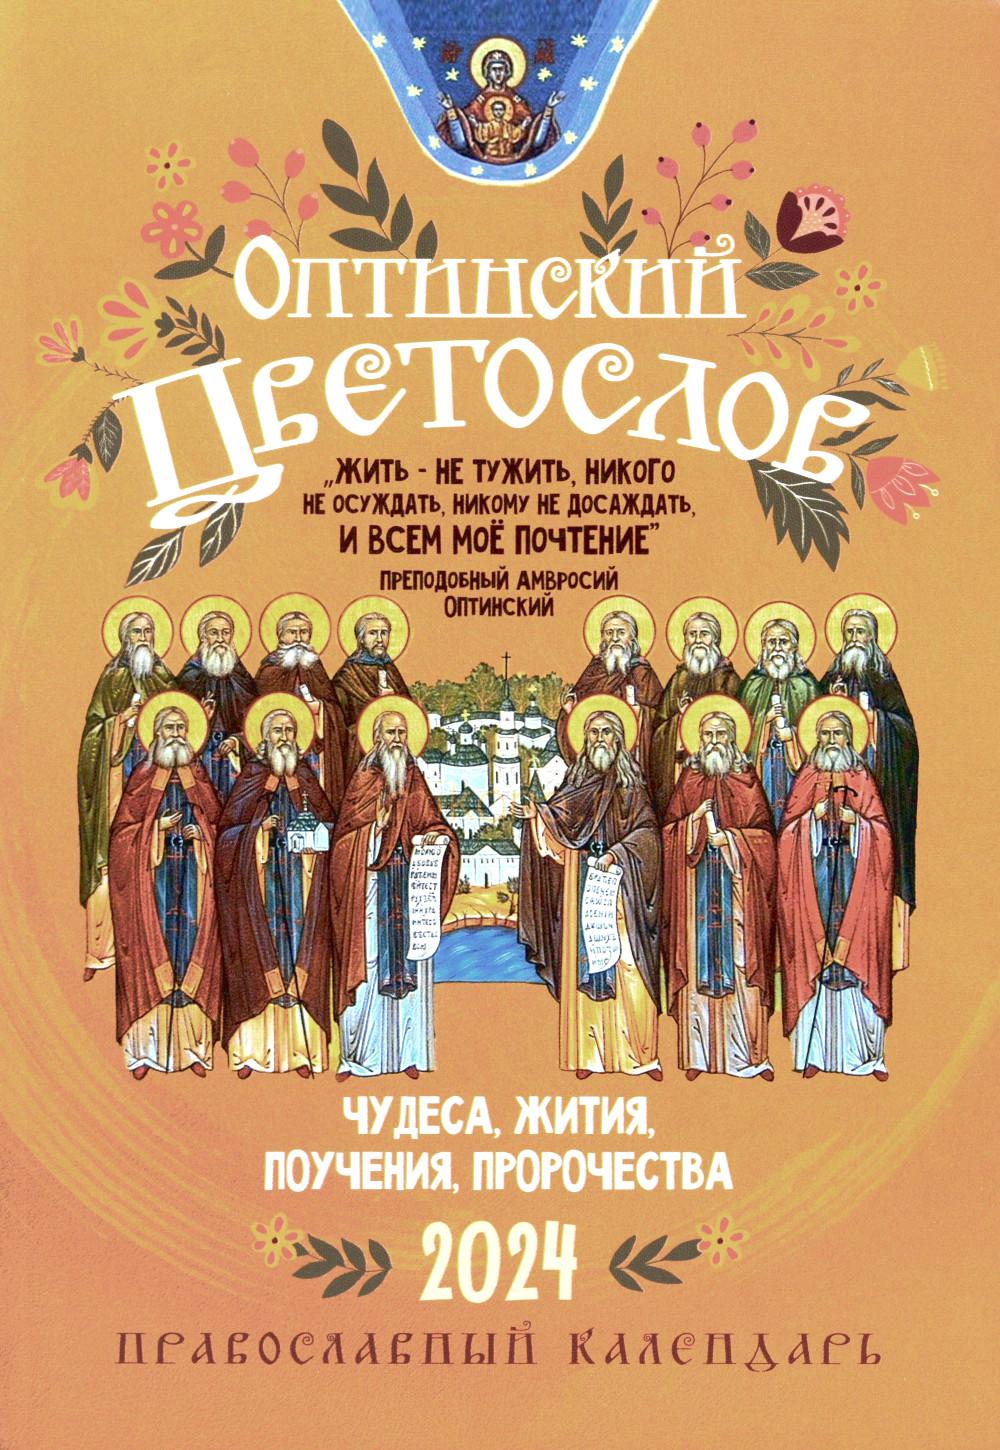 Календарь Оптинский цветослов. Православный календарь 2024